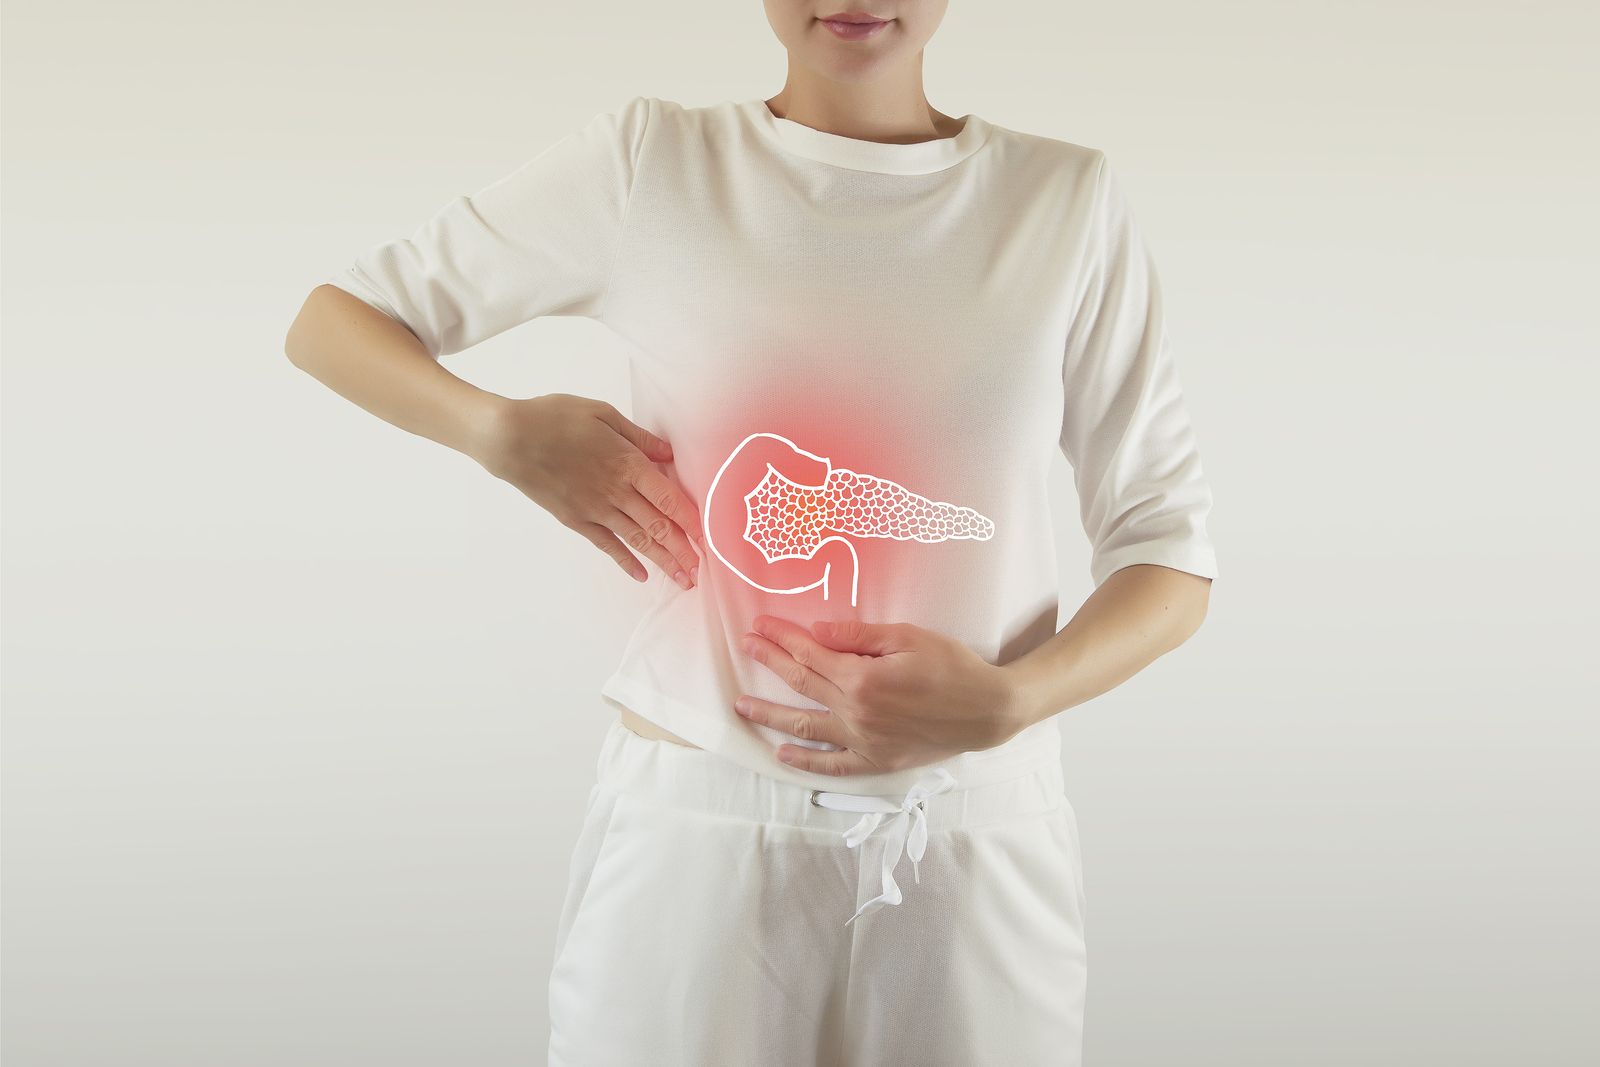 ¿Has notado cambios en tu ritmo intestinal? ¡Cuidado! podrías tener diverticulitis de colon